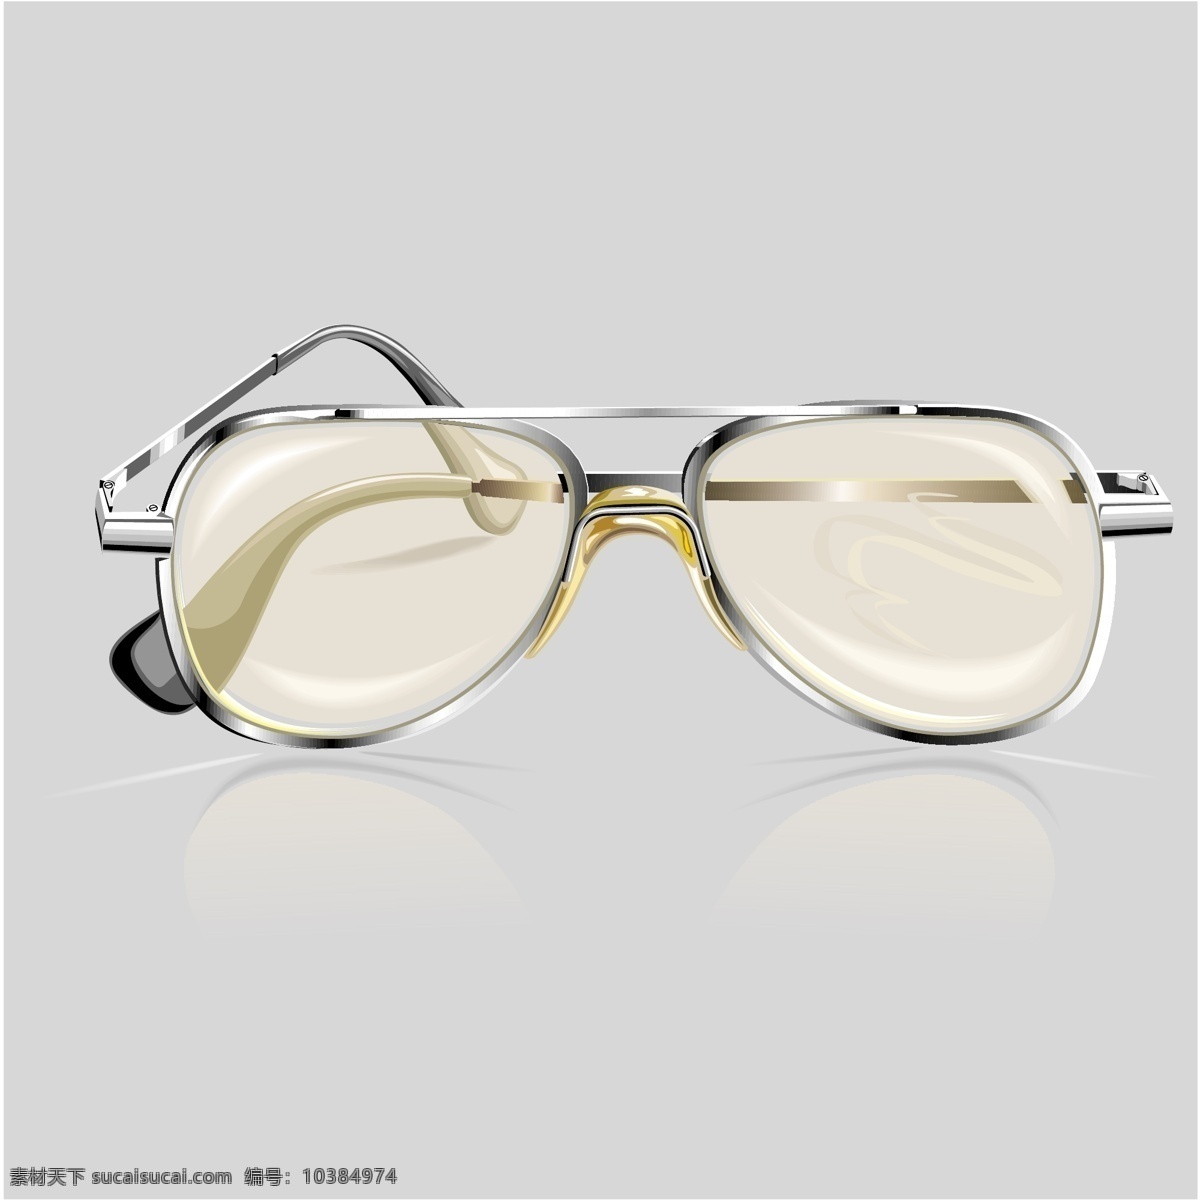 眼镜矢量素材 酷 眼镜 现实主义 白色